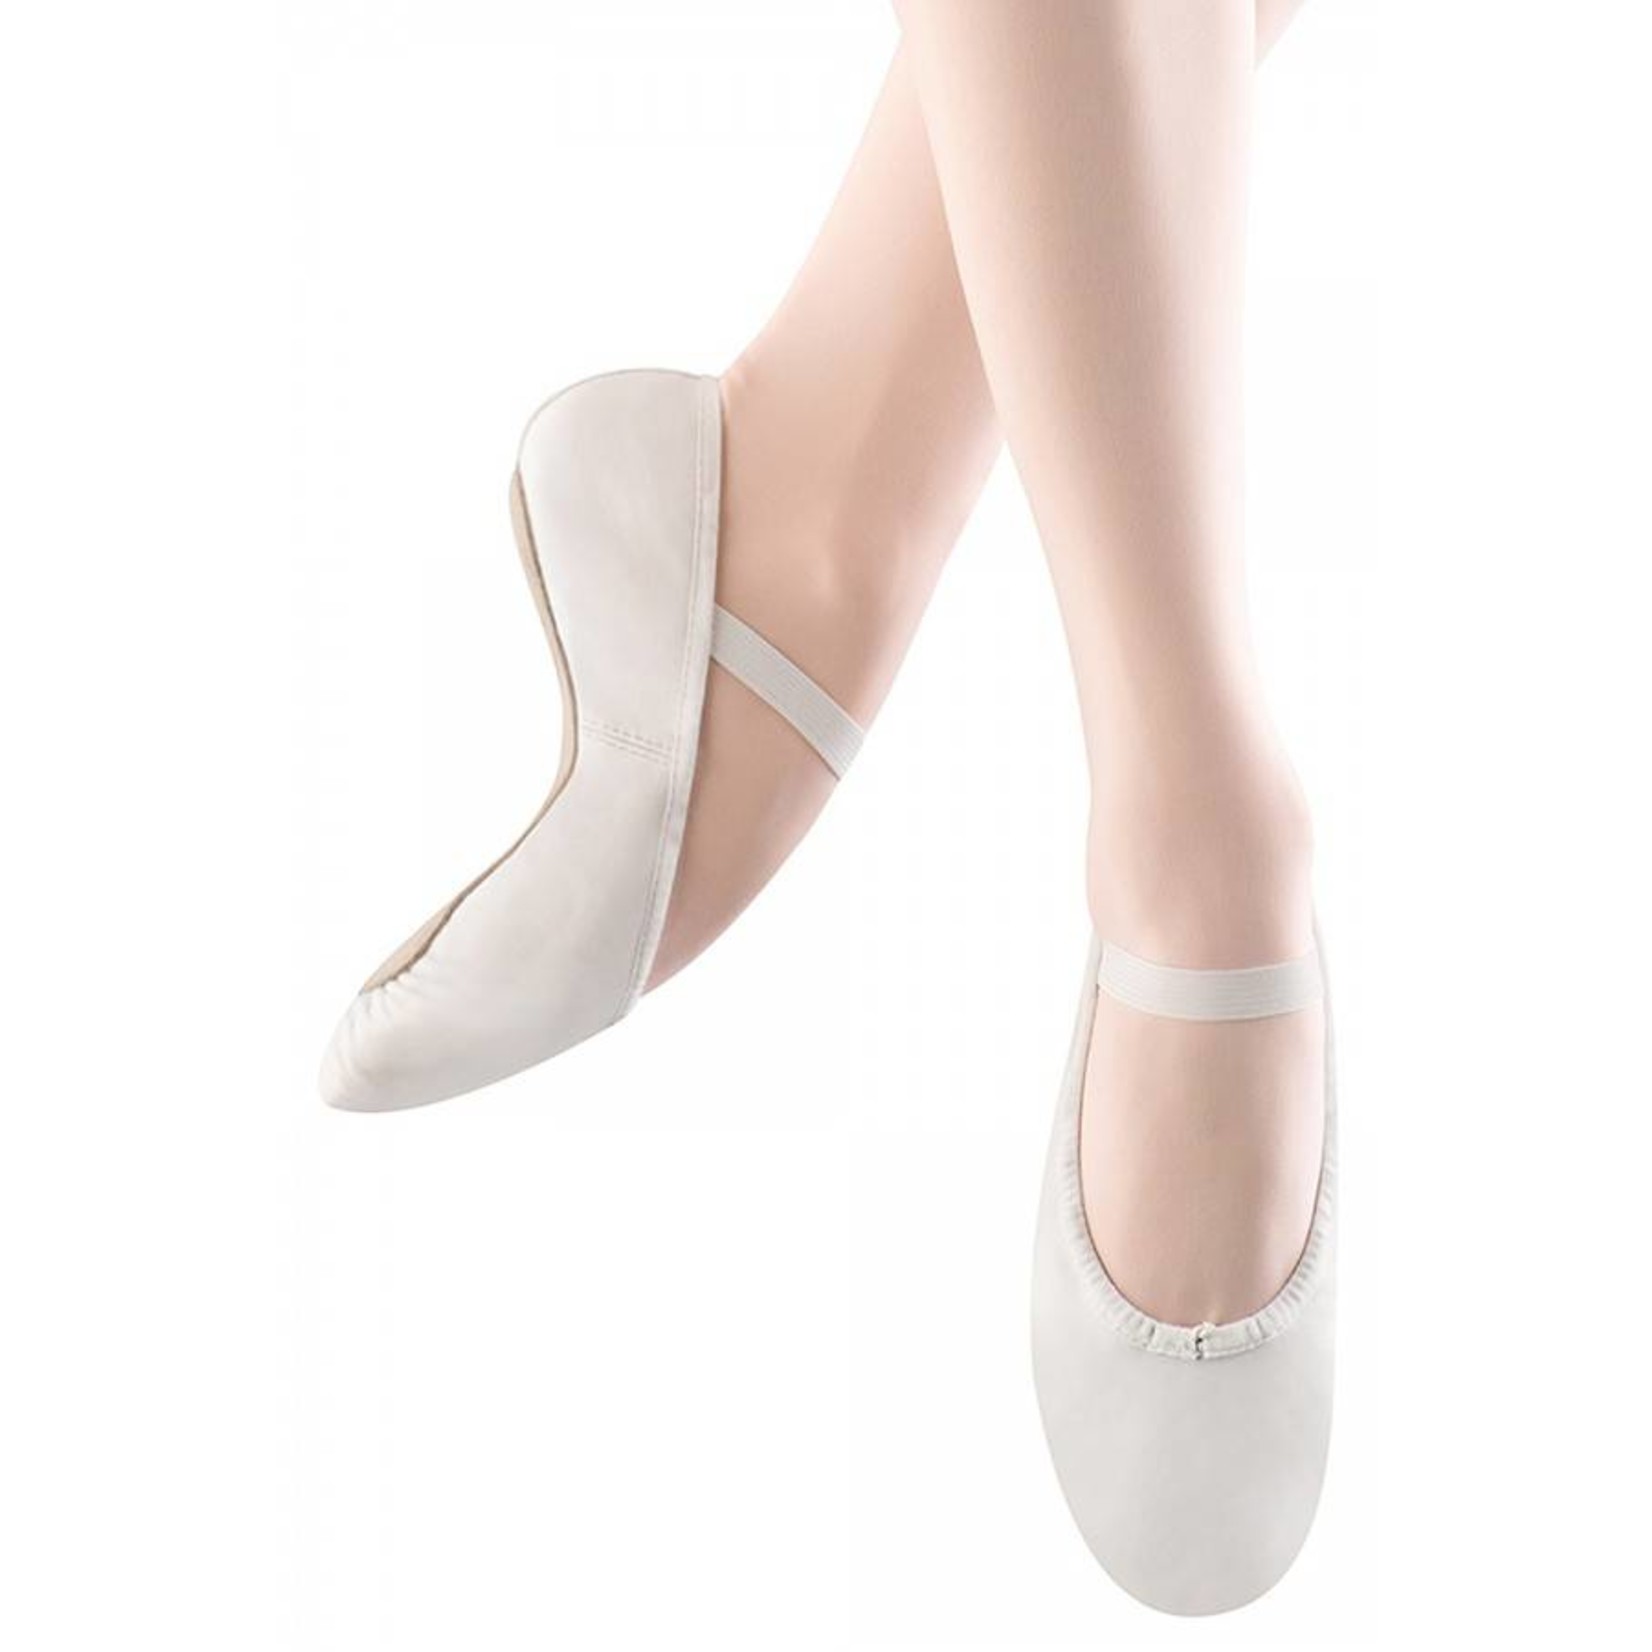 Dansoft Full Sole Ballet Shoes - S0205L